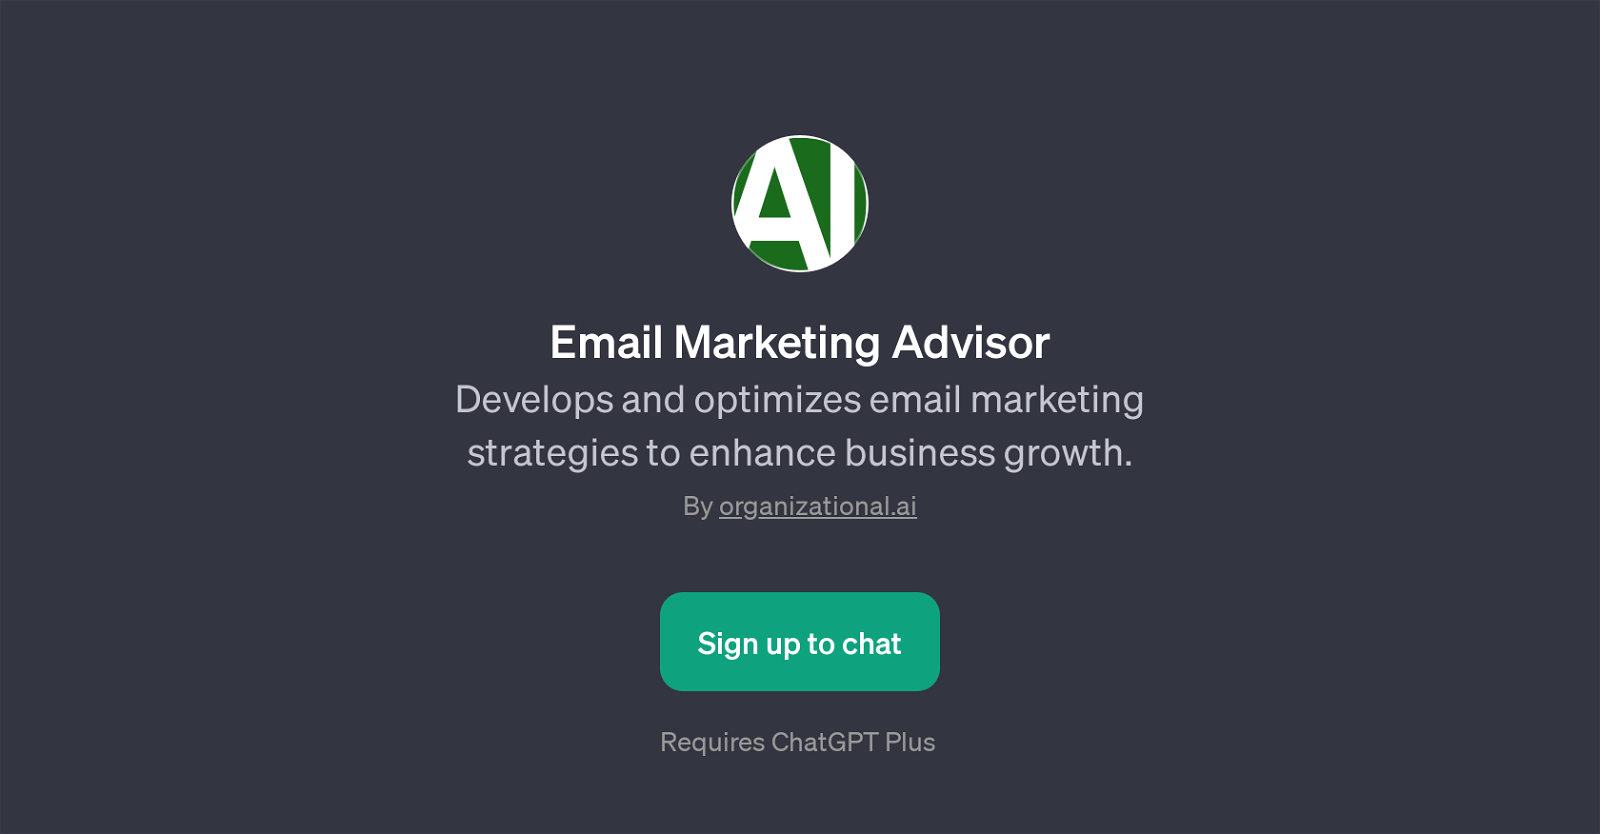 Email Marketing Advisor website